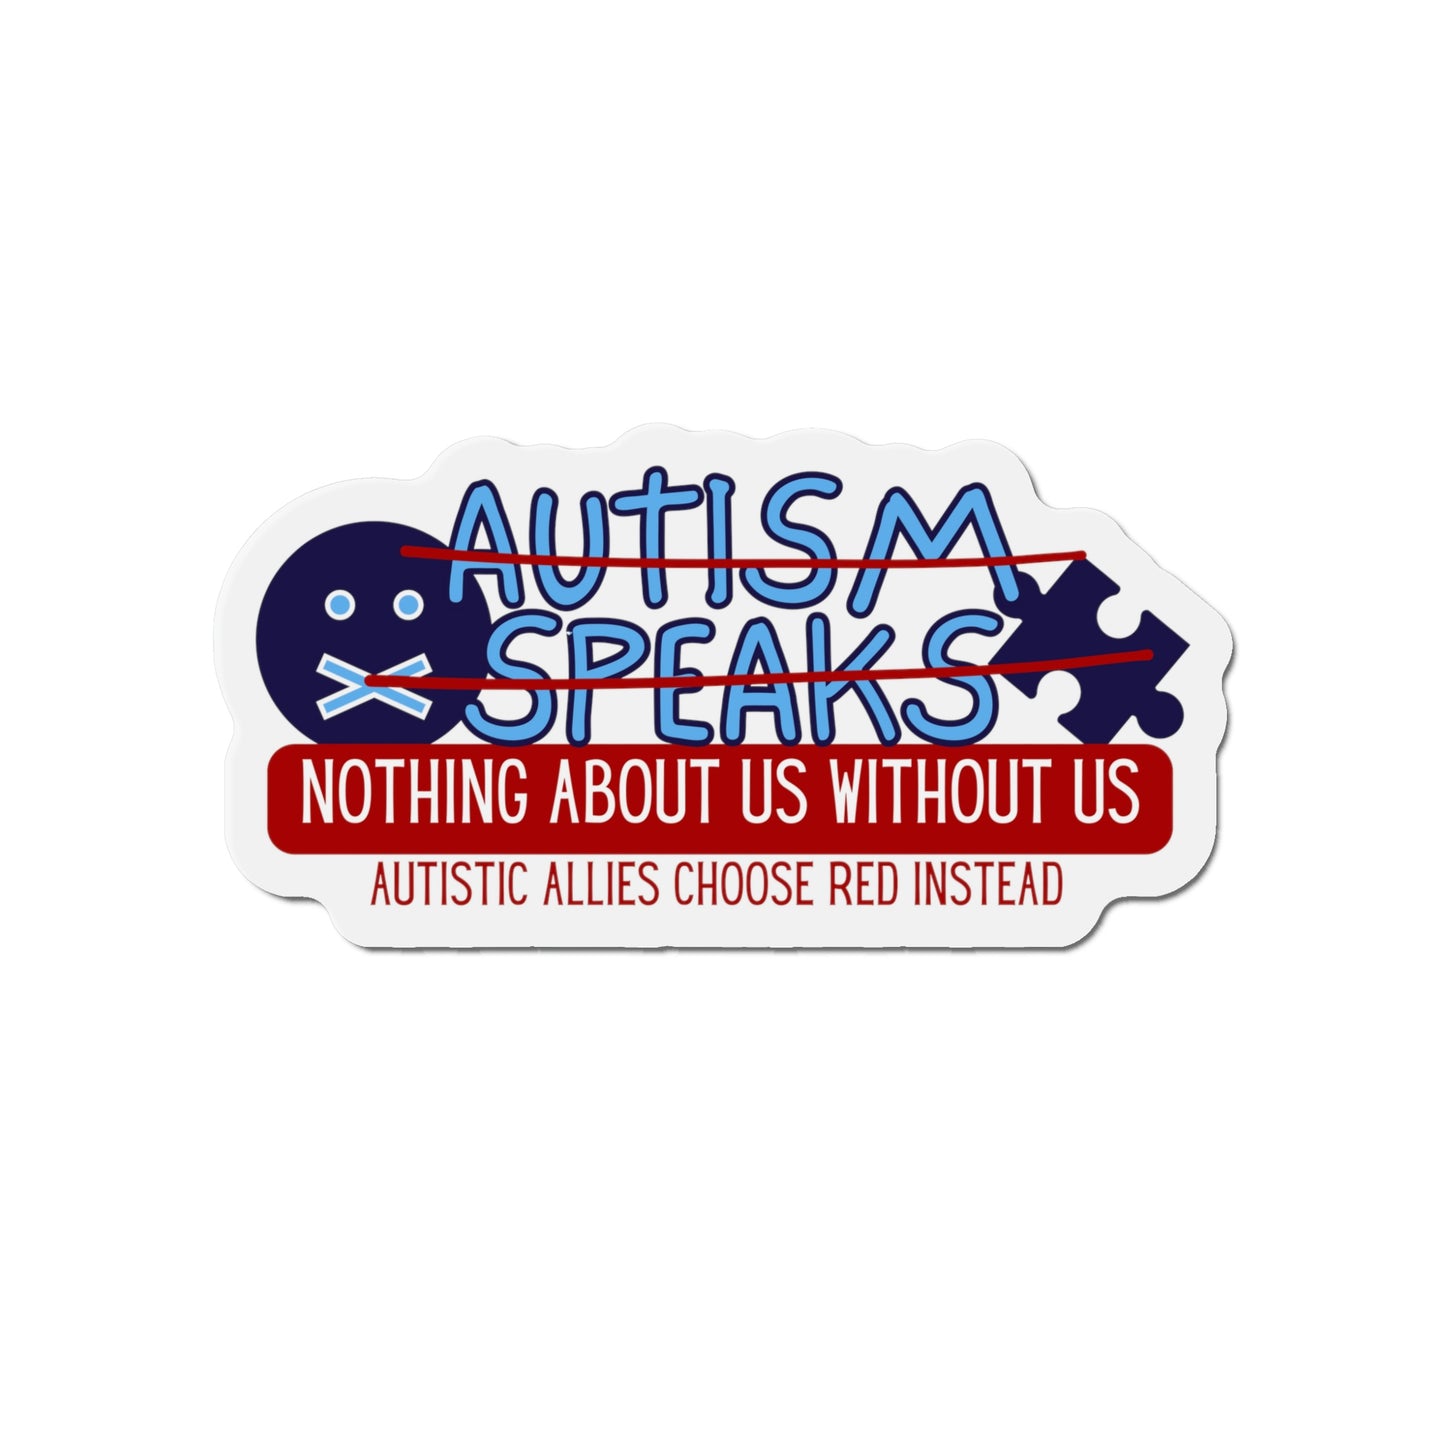 Say No to Autism Speaks Die-Cut Magnets